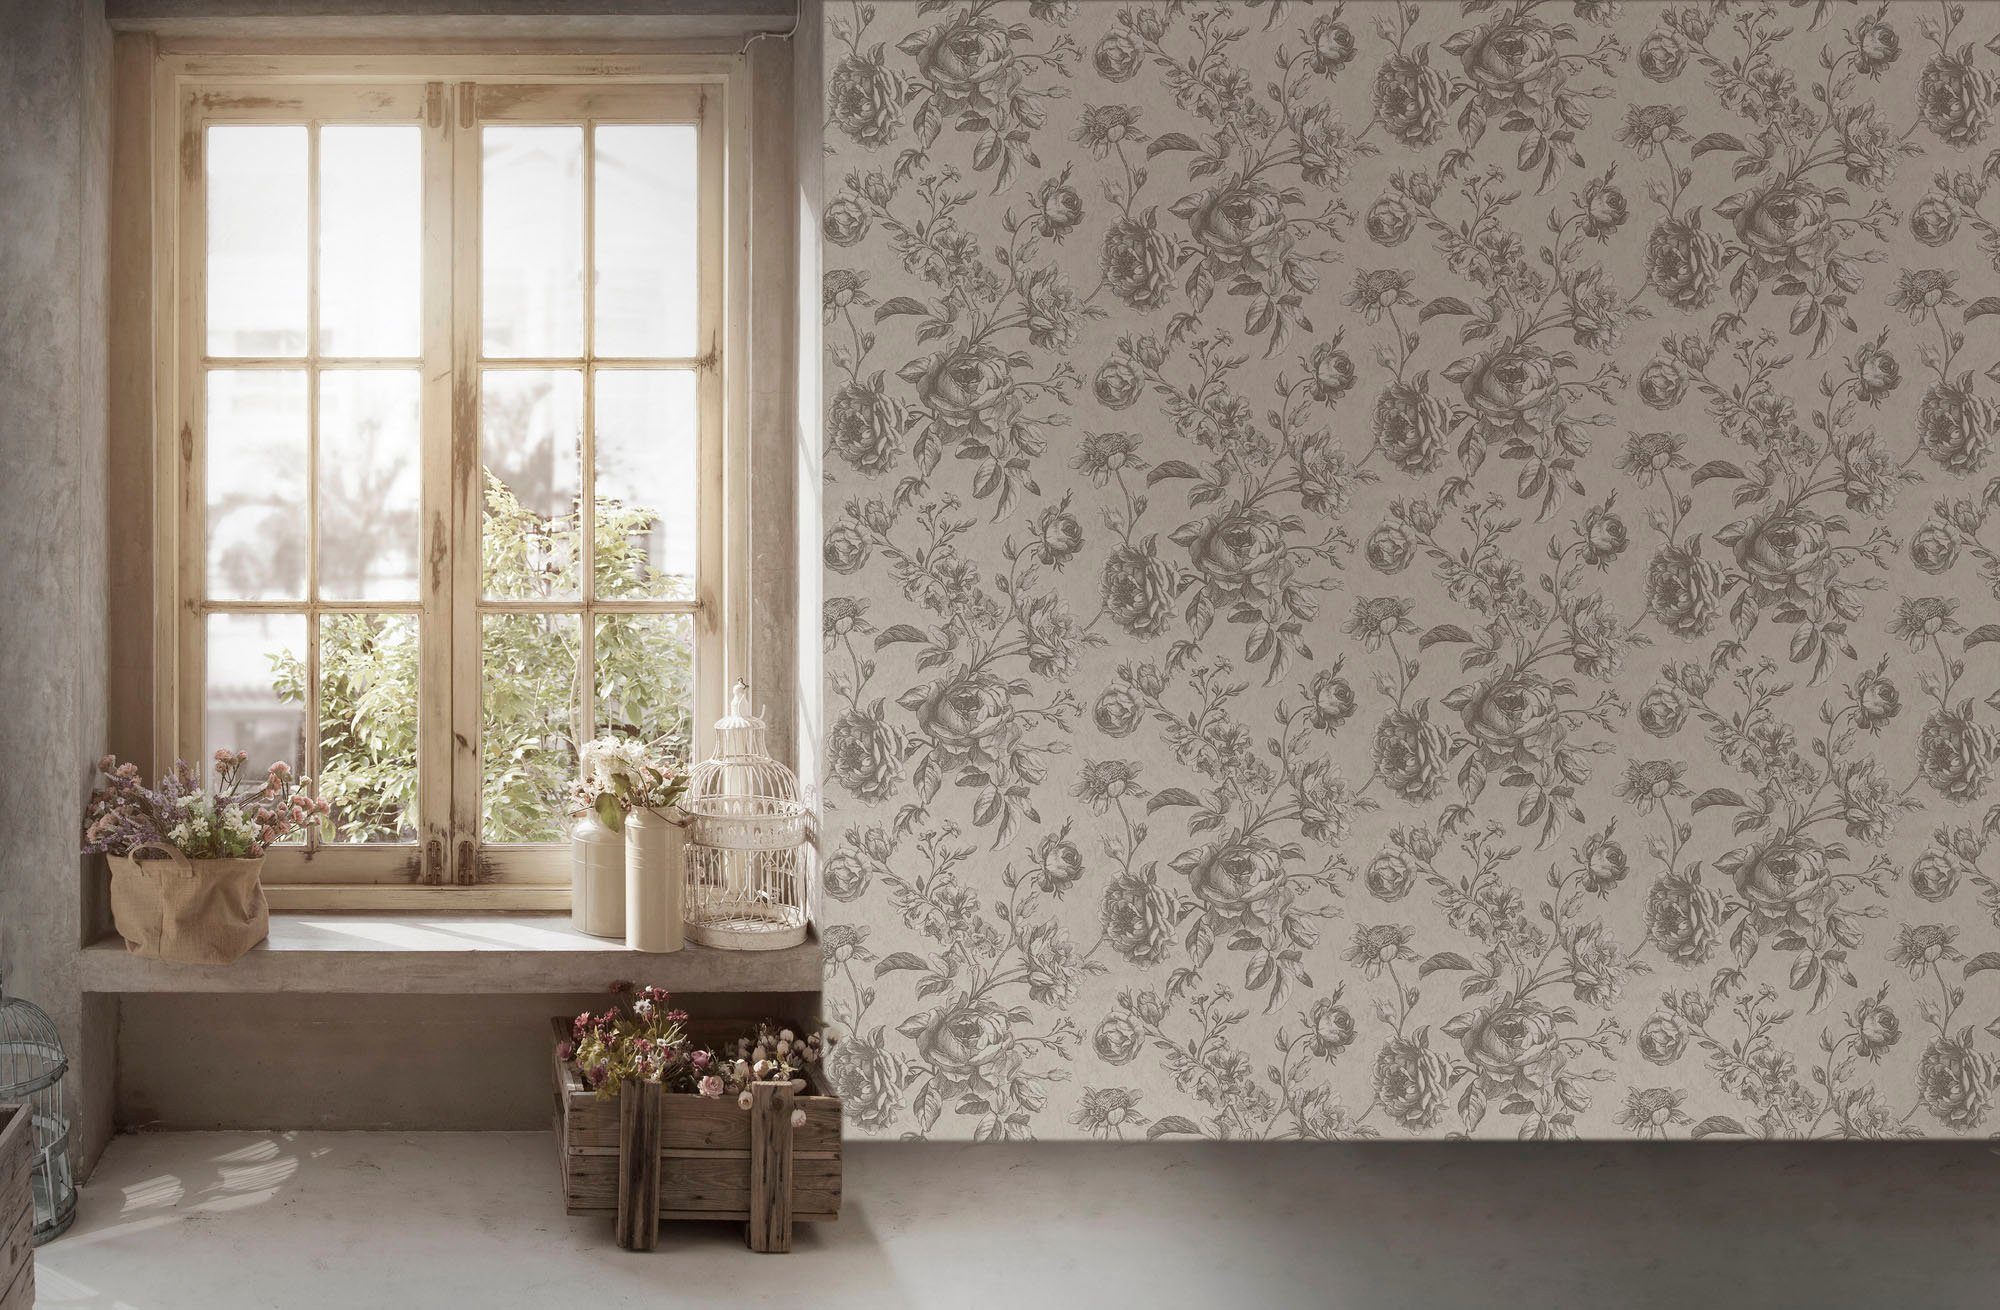 Tapete Spa, floral, Floral geblümt, natürlich, Blumen grau/weiß walls Vliestapete strukturiert, living My My Home